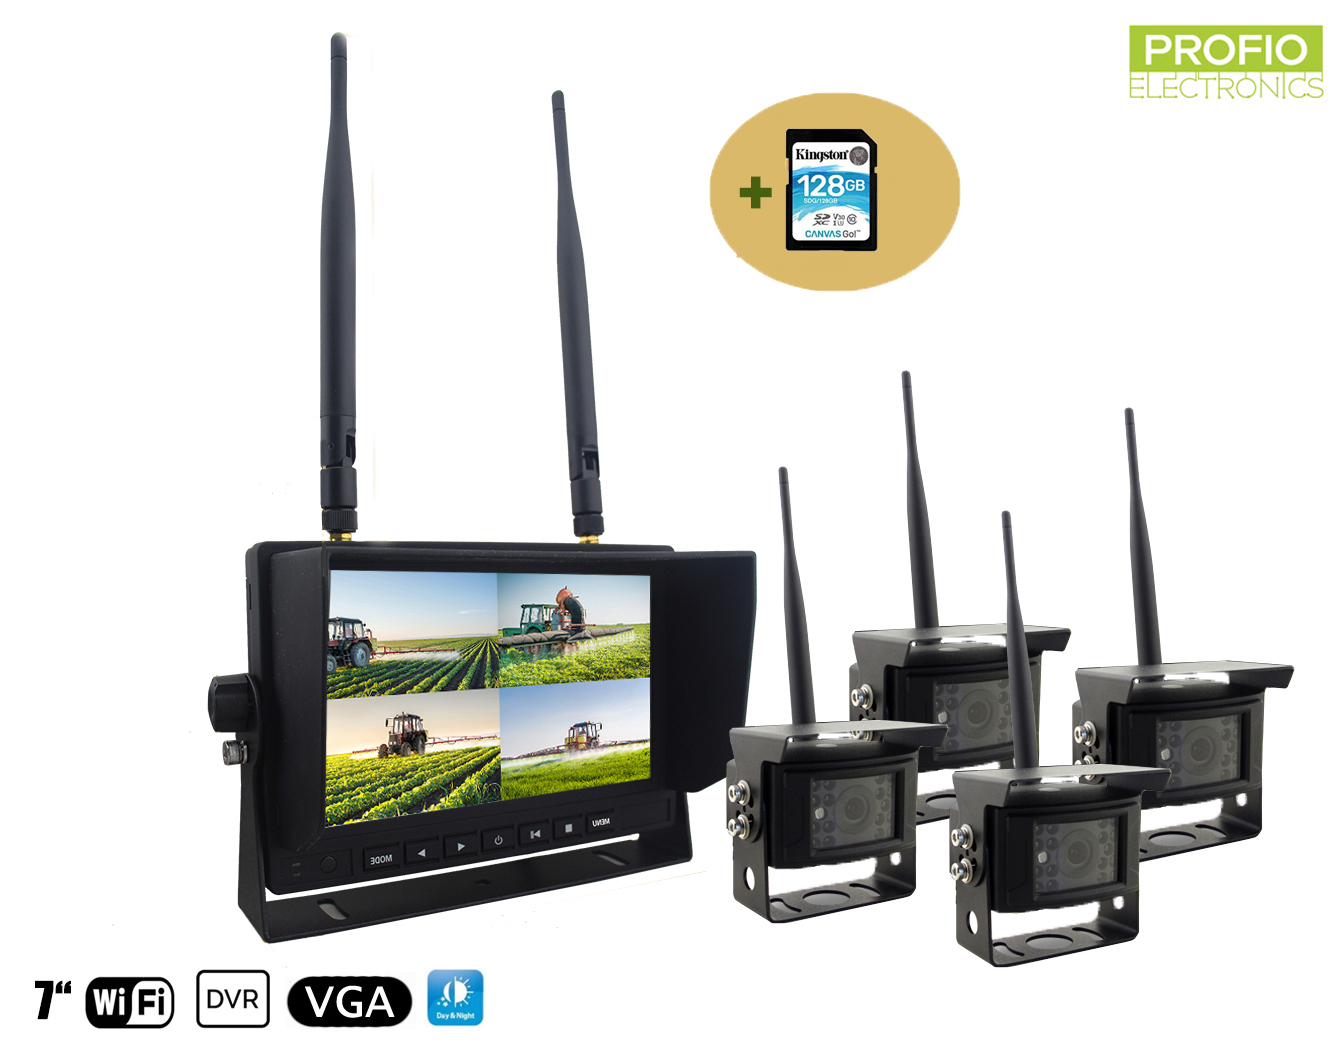 Bezdrátová kamera s monitorem - 4x kamera + 7 "LCD s nahráváním DVR (Audio + Video) + karta 128GB SDXC